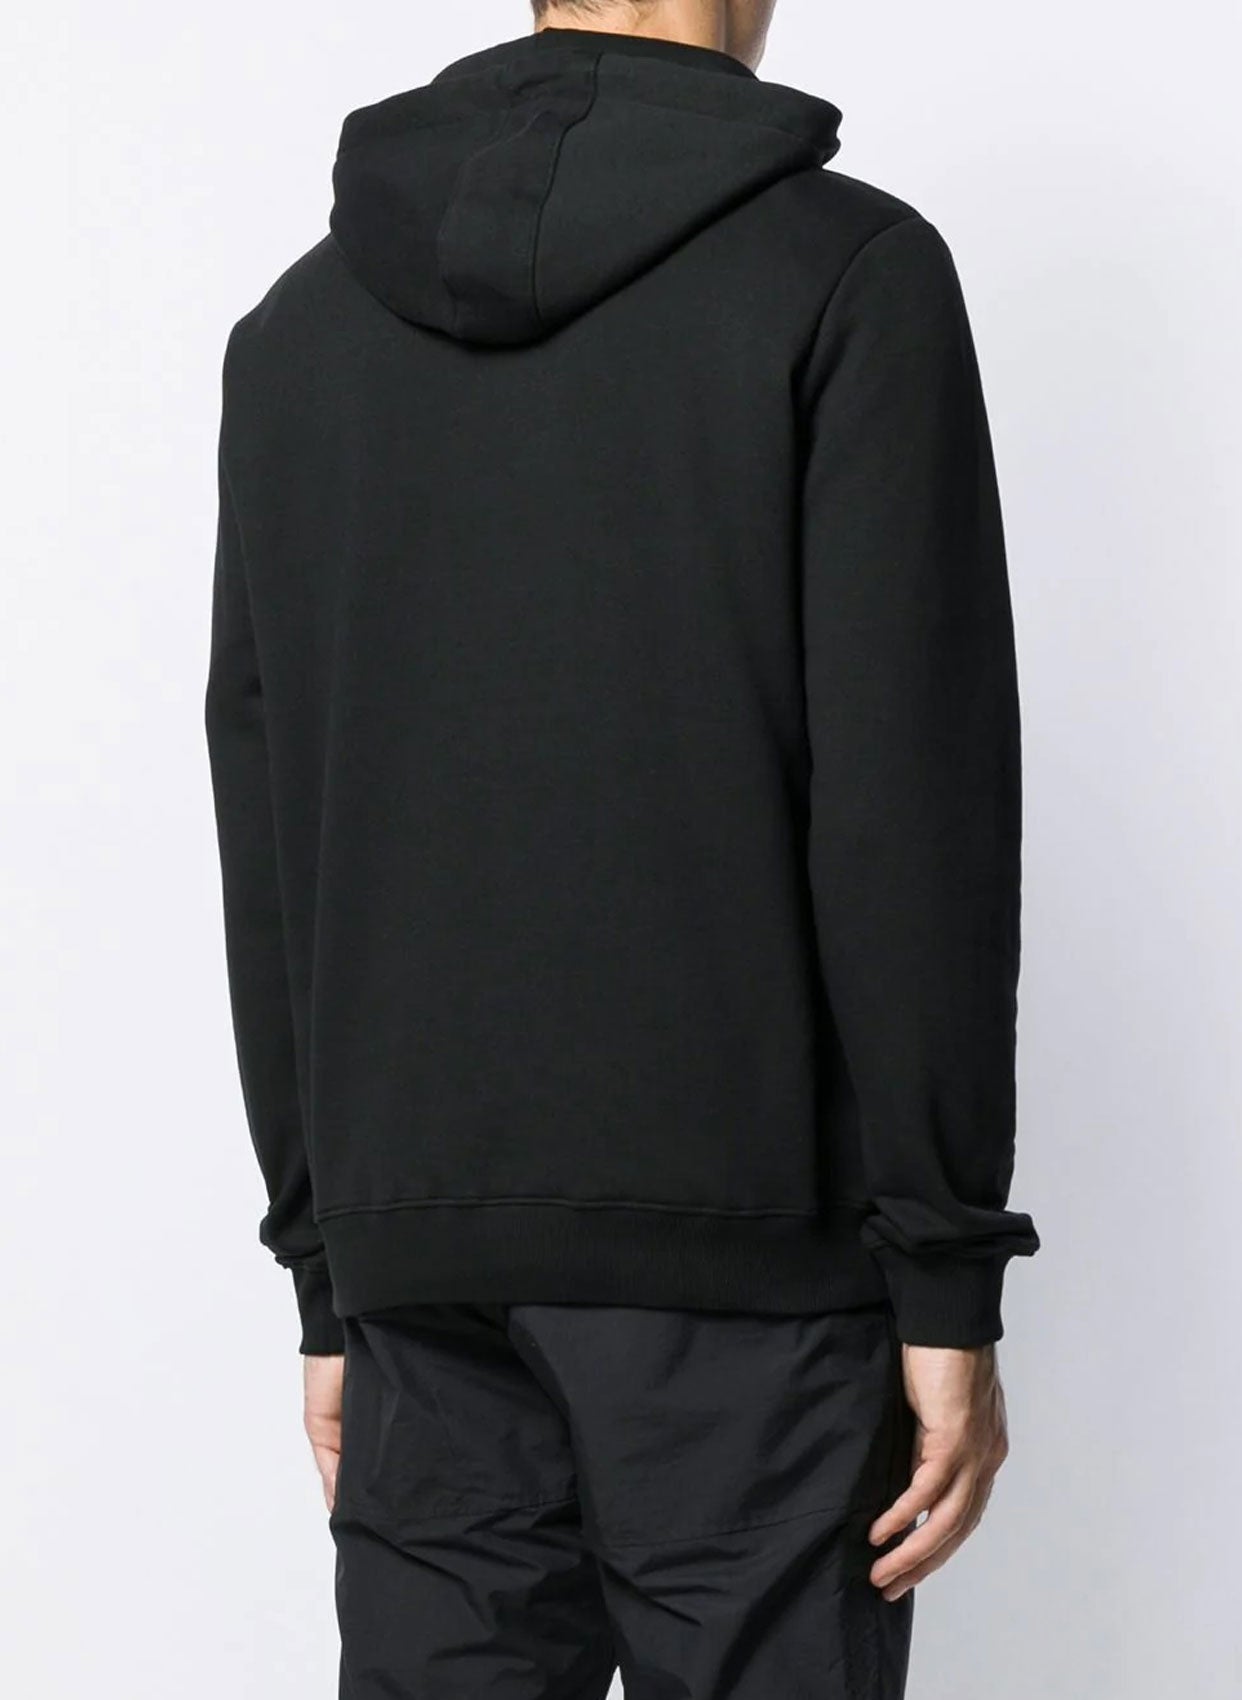 Les Hommes Sweatshirt-Libas Trendy Fashion Store